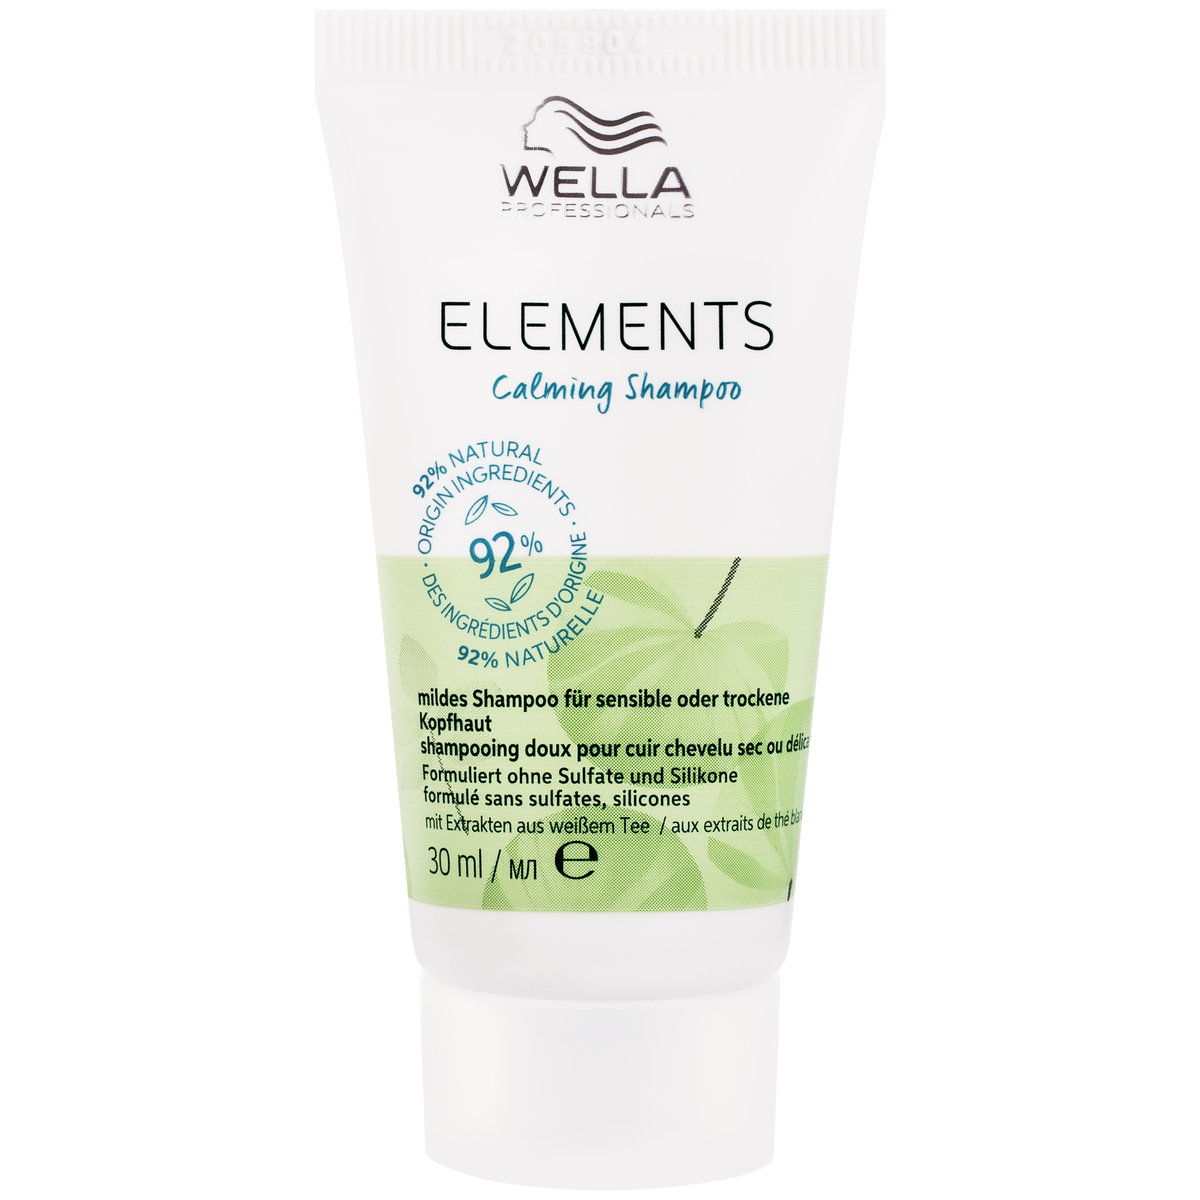 Wella, Elements Calming Shampoo, Szampon do włosów i suchej lub wrażliwej skóry głowy, nawilża i oczyszcza, 30 ml